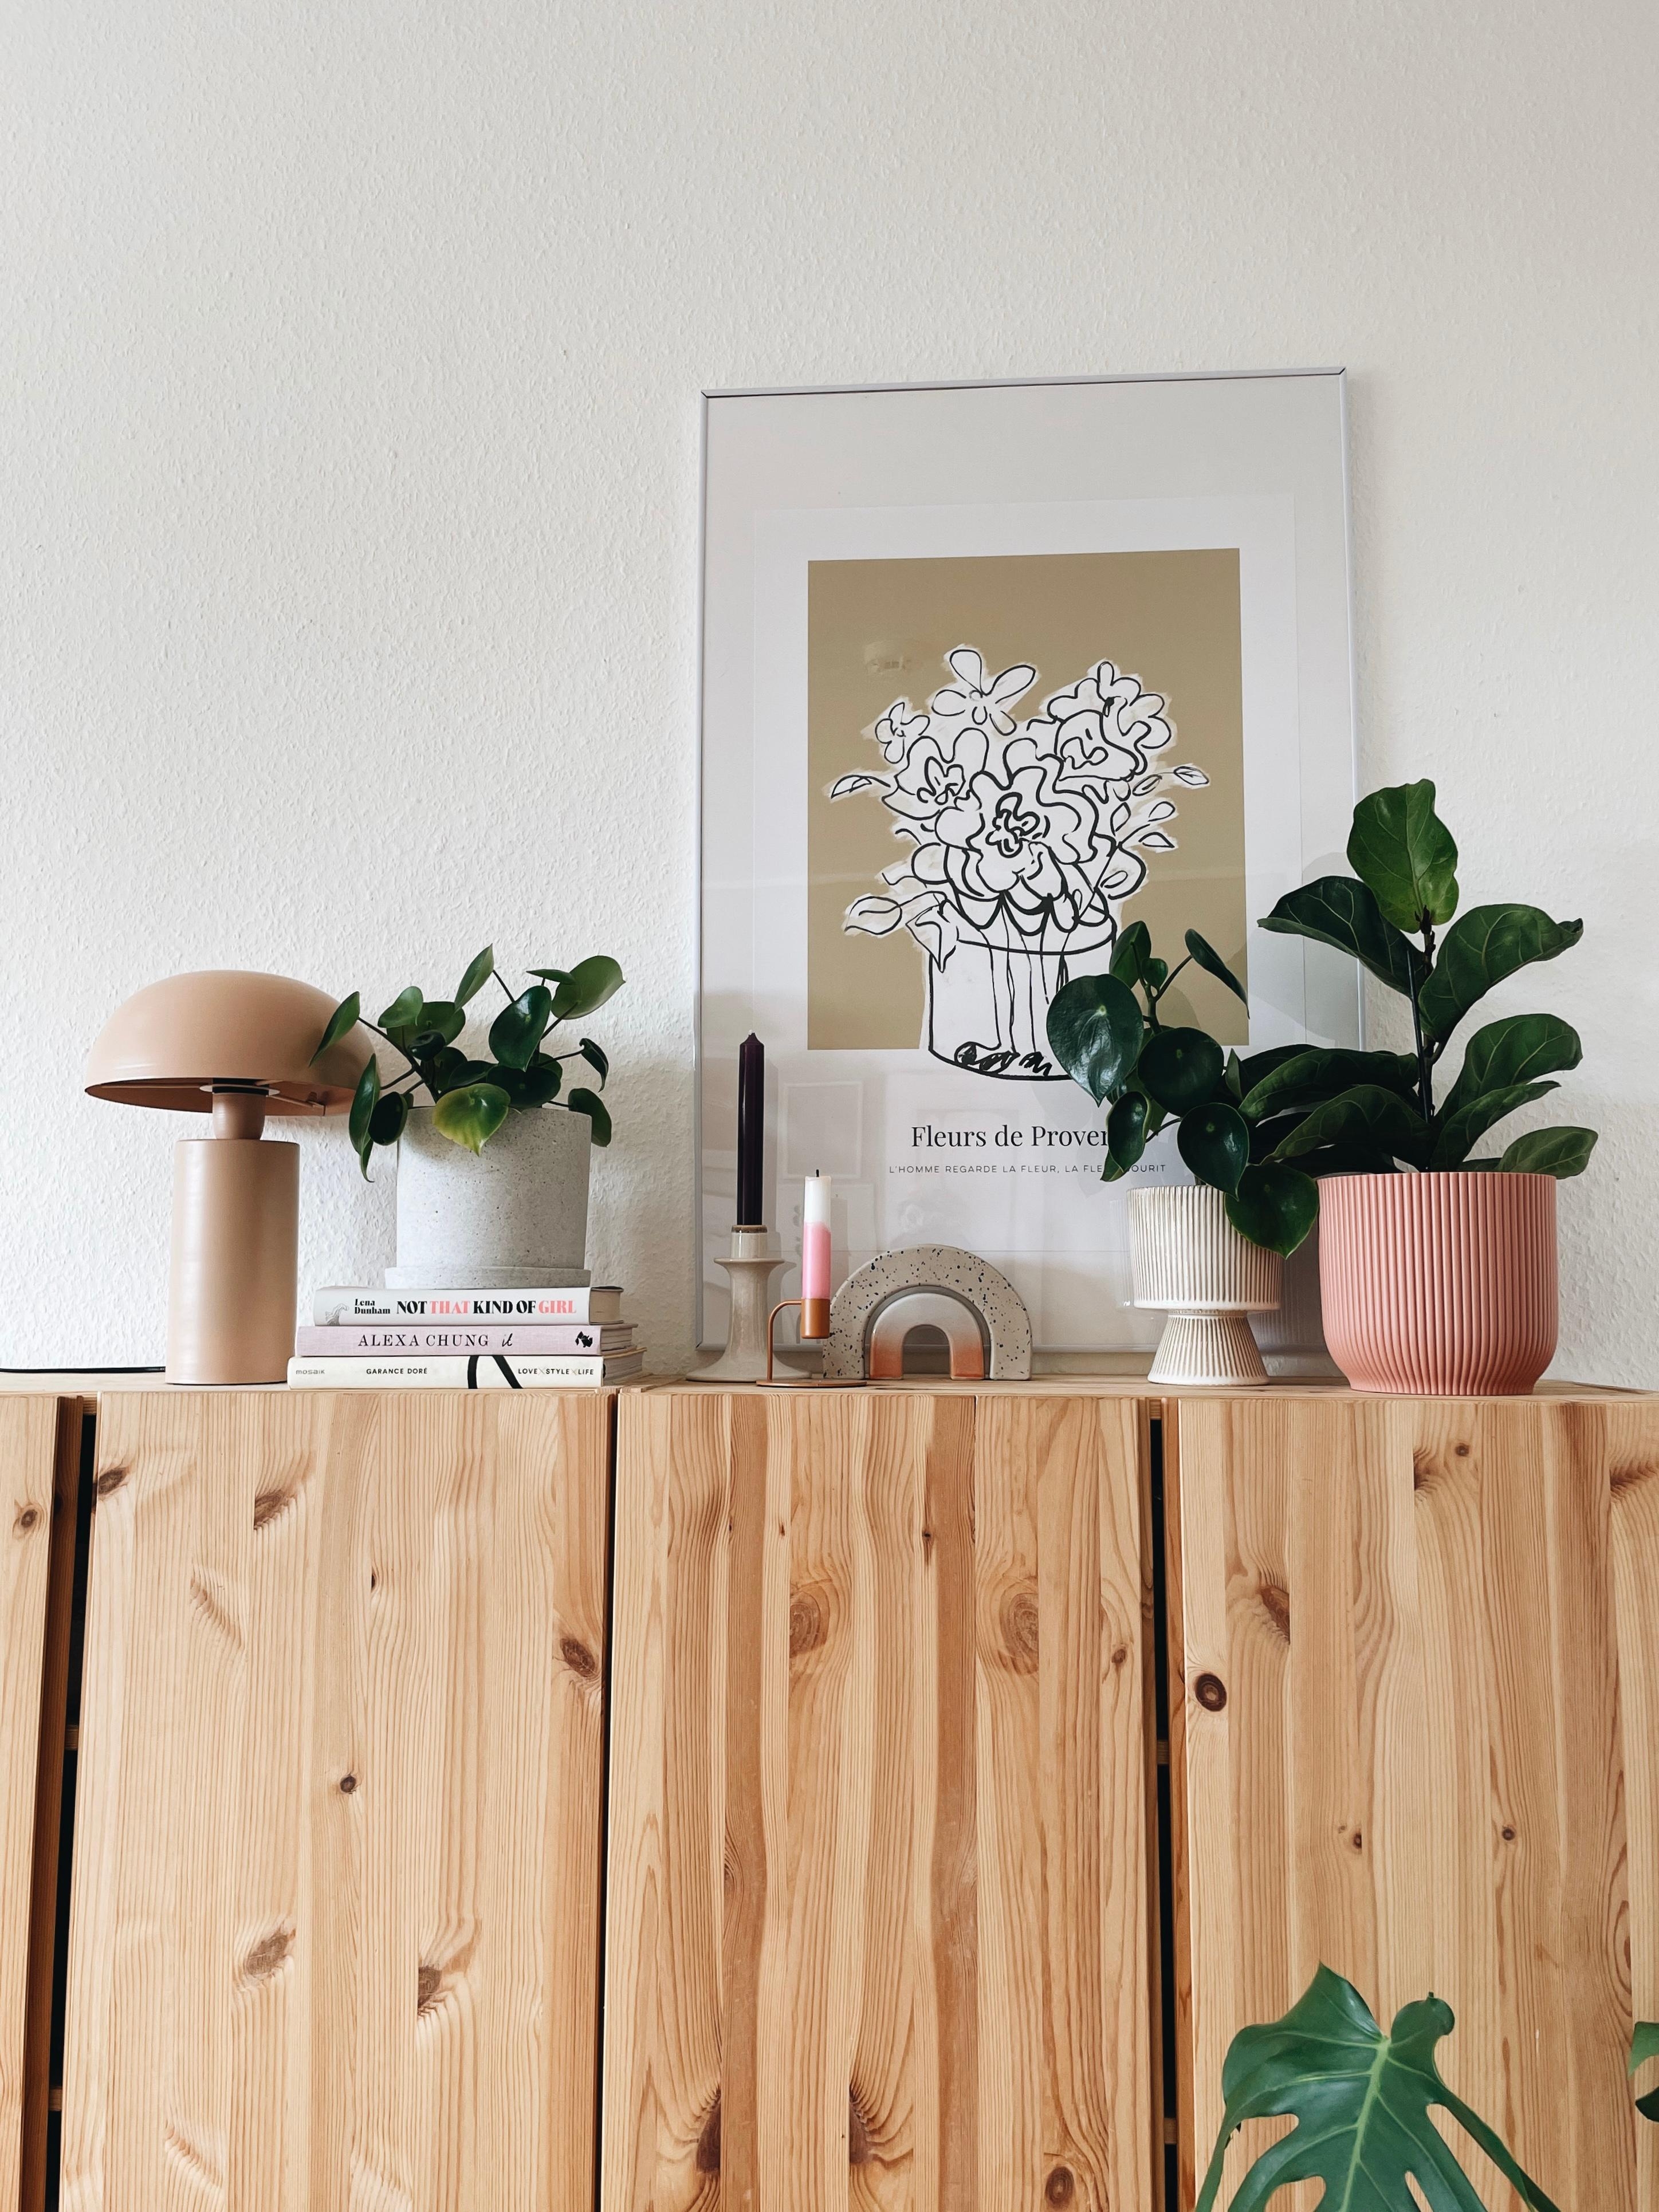 Große Pflanzenliebe 💚 #wohnzimmer #inspiration #dekoration #plants #couchliebt #hygge 